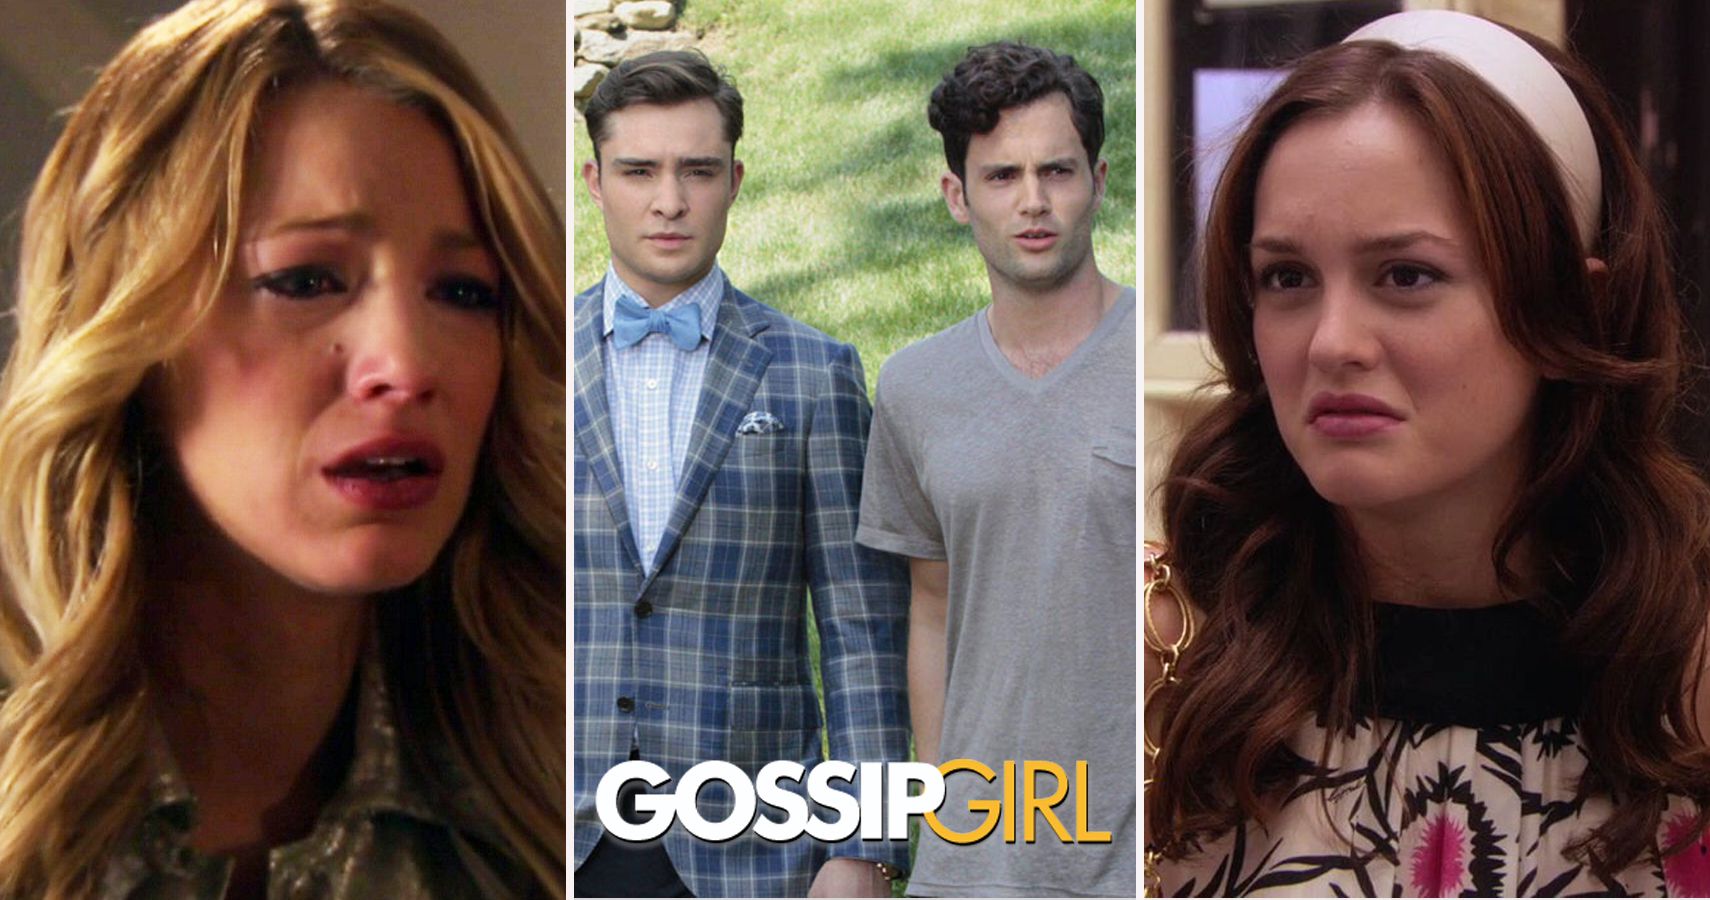 10 Best 'Gossip Girl' Storylines, According to Reddit